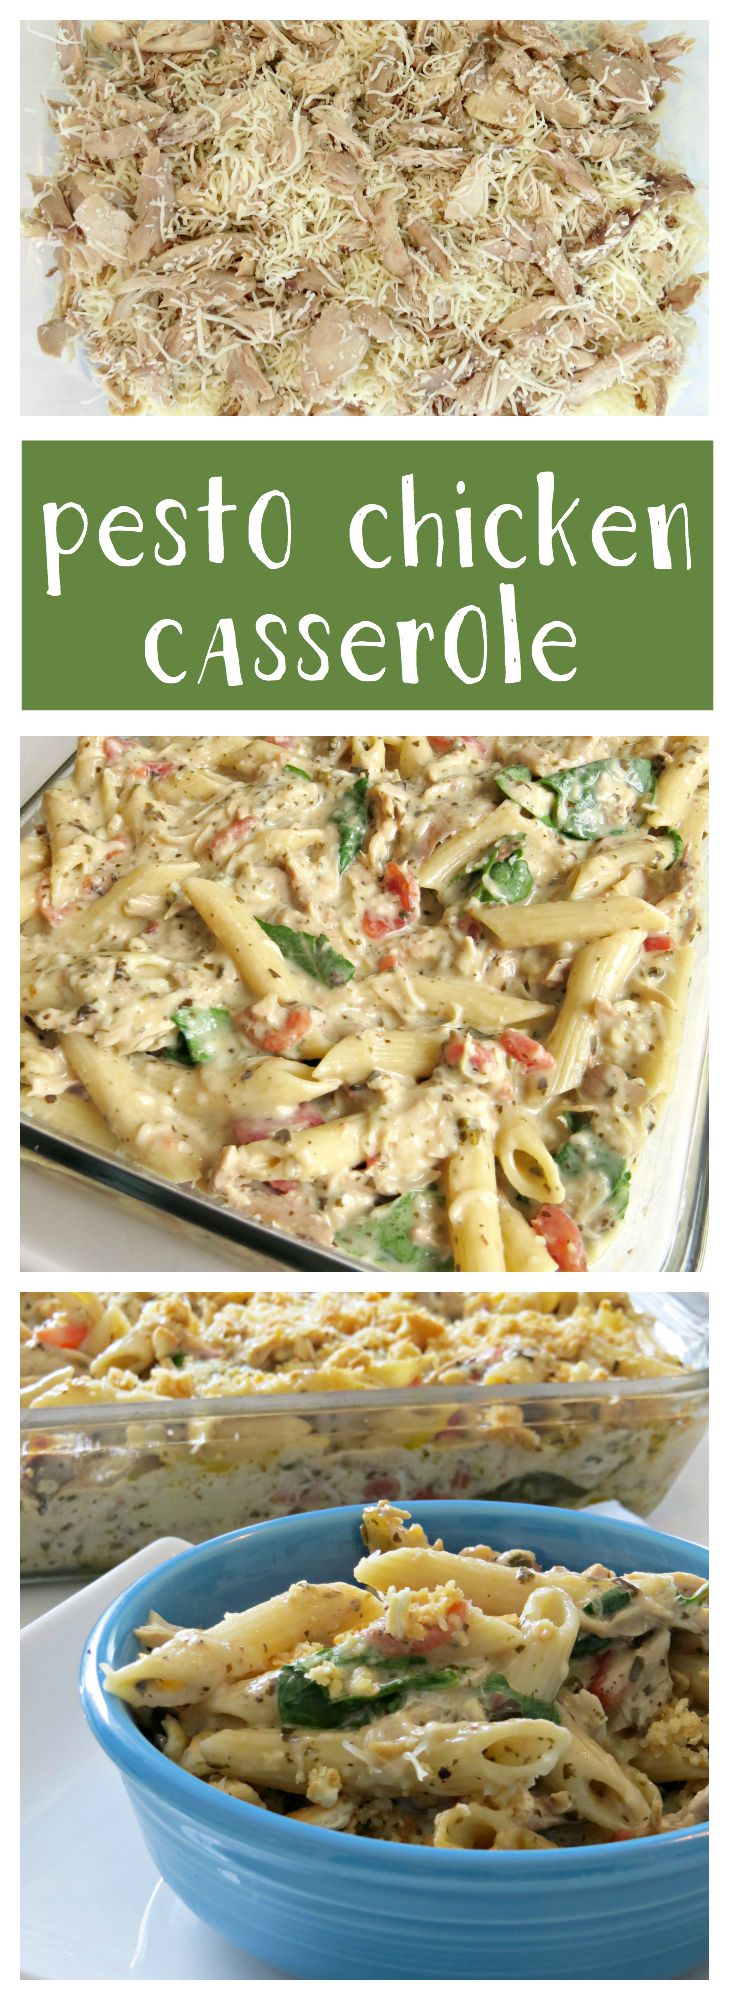 This Pesto Chicken Casserole recipe is creamy and delicious!